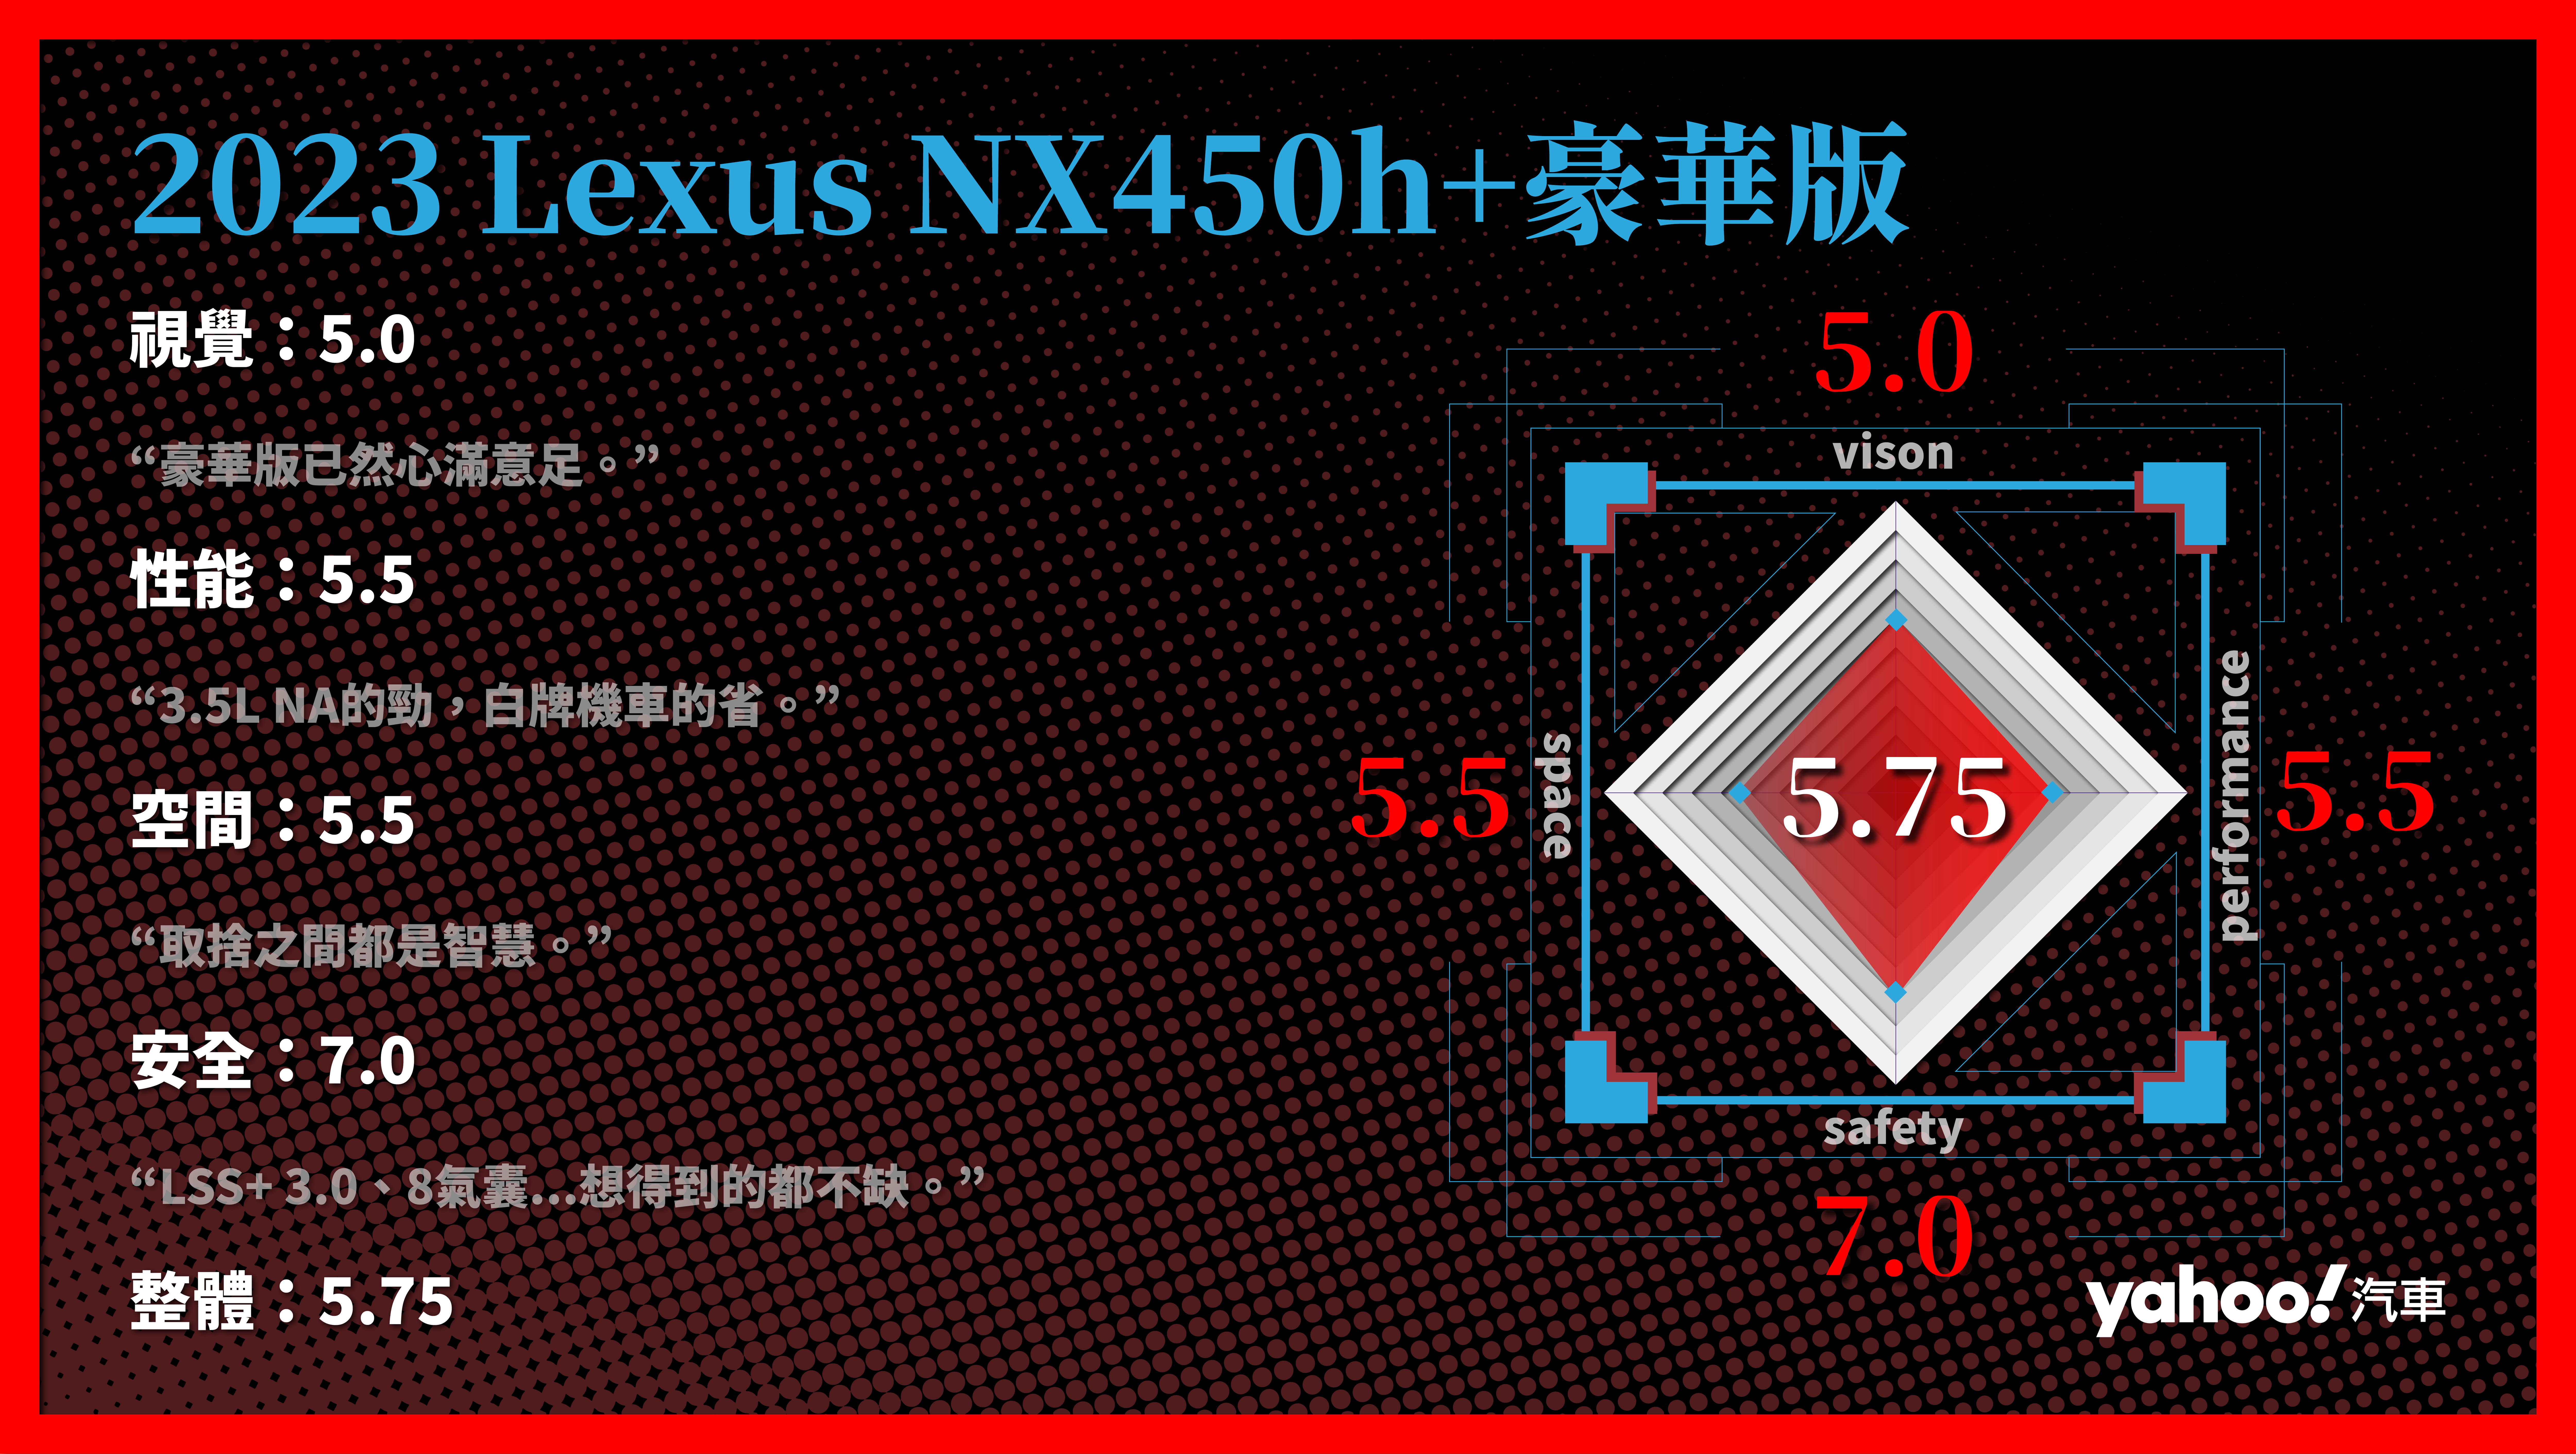 2023 Lexus NX450h+豪華版 的分項評比。